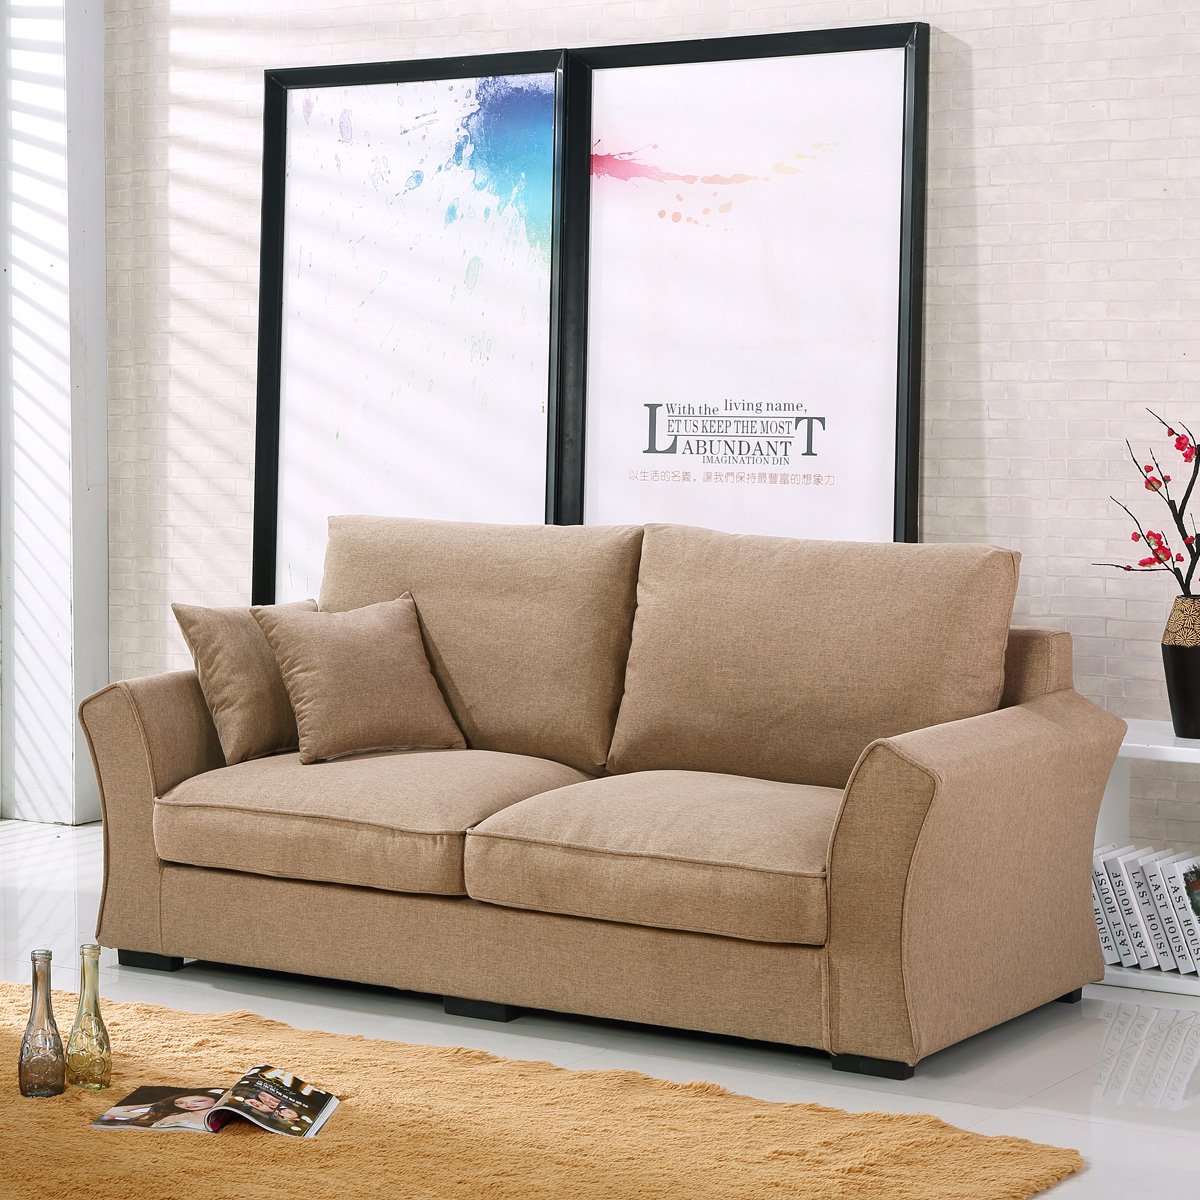 新款小型羽绒布艺麻布四人位沙发3人2米美式沙发一字直排简单沙发